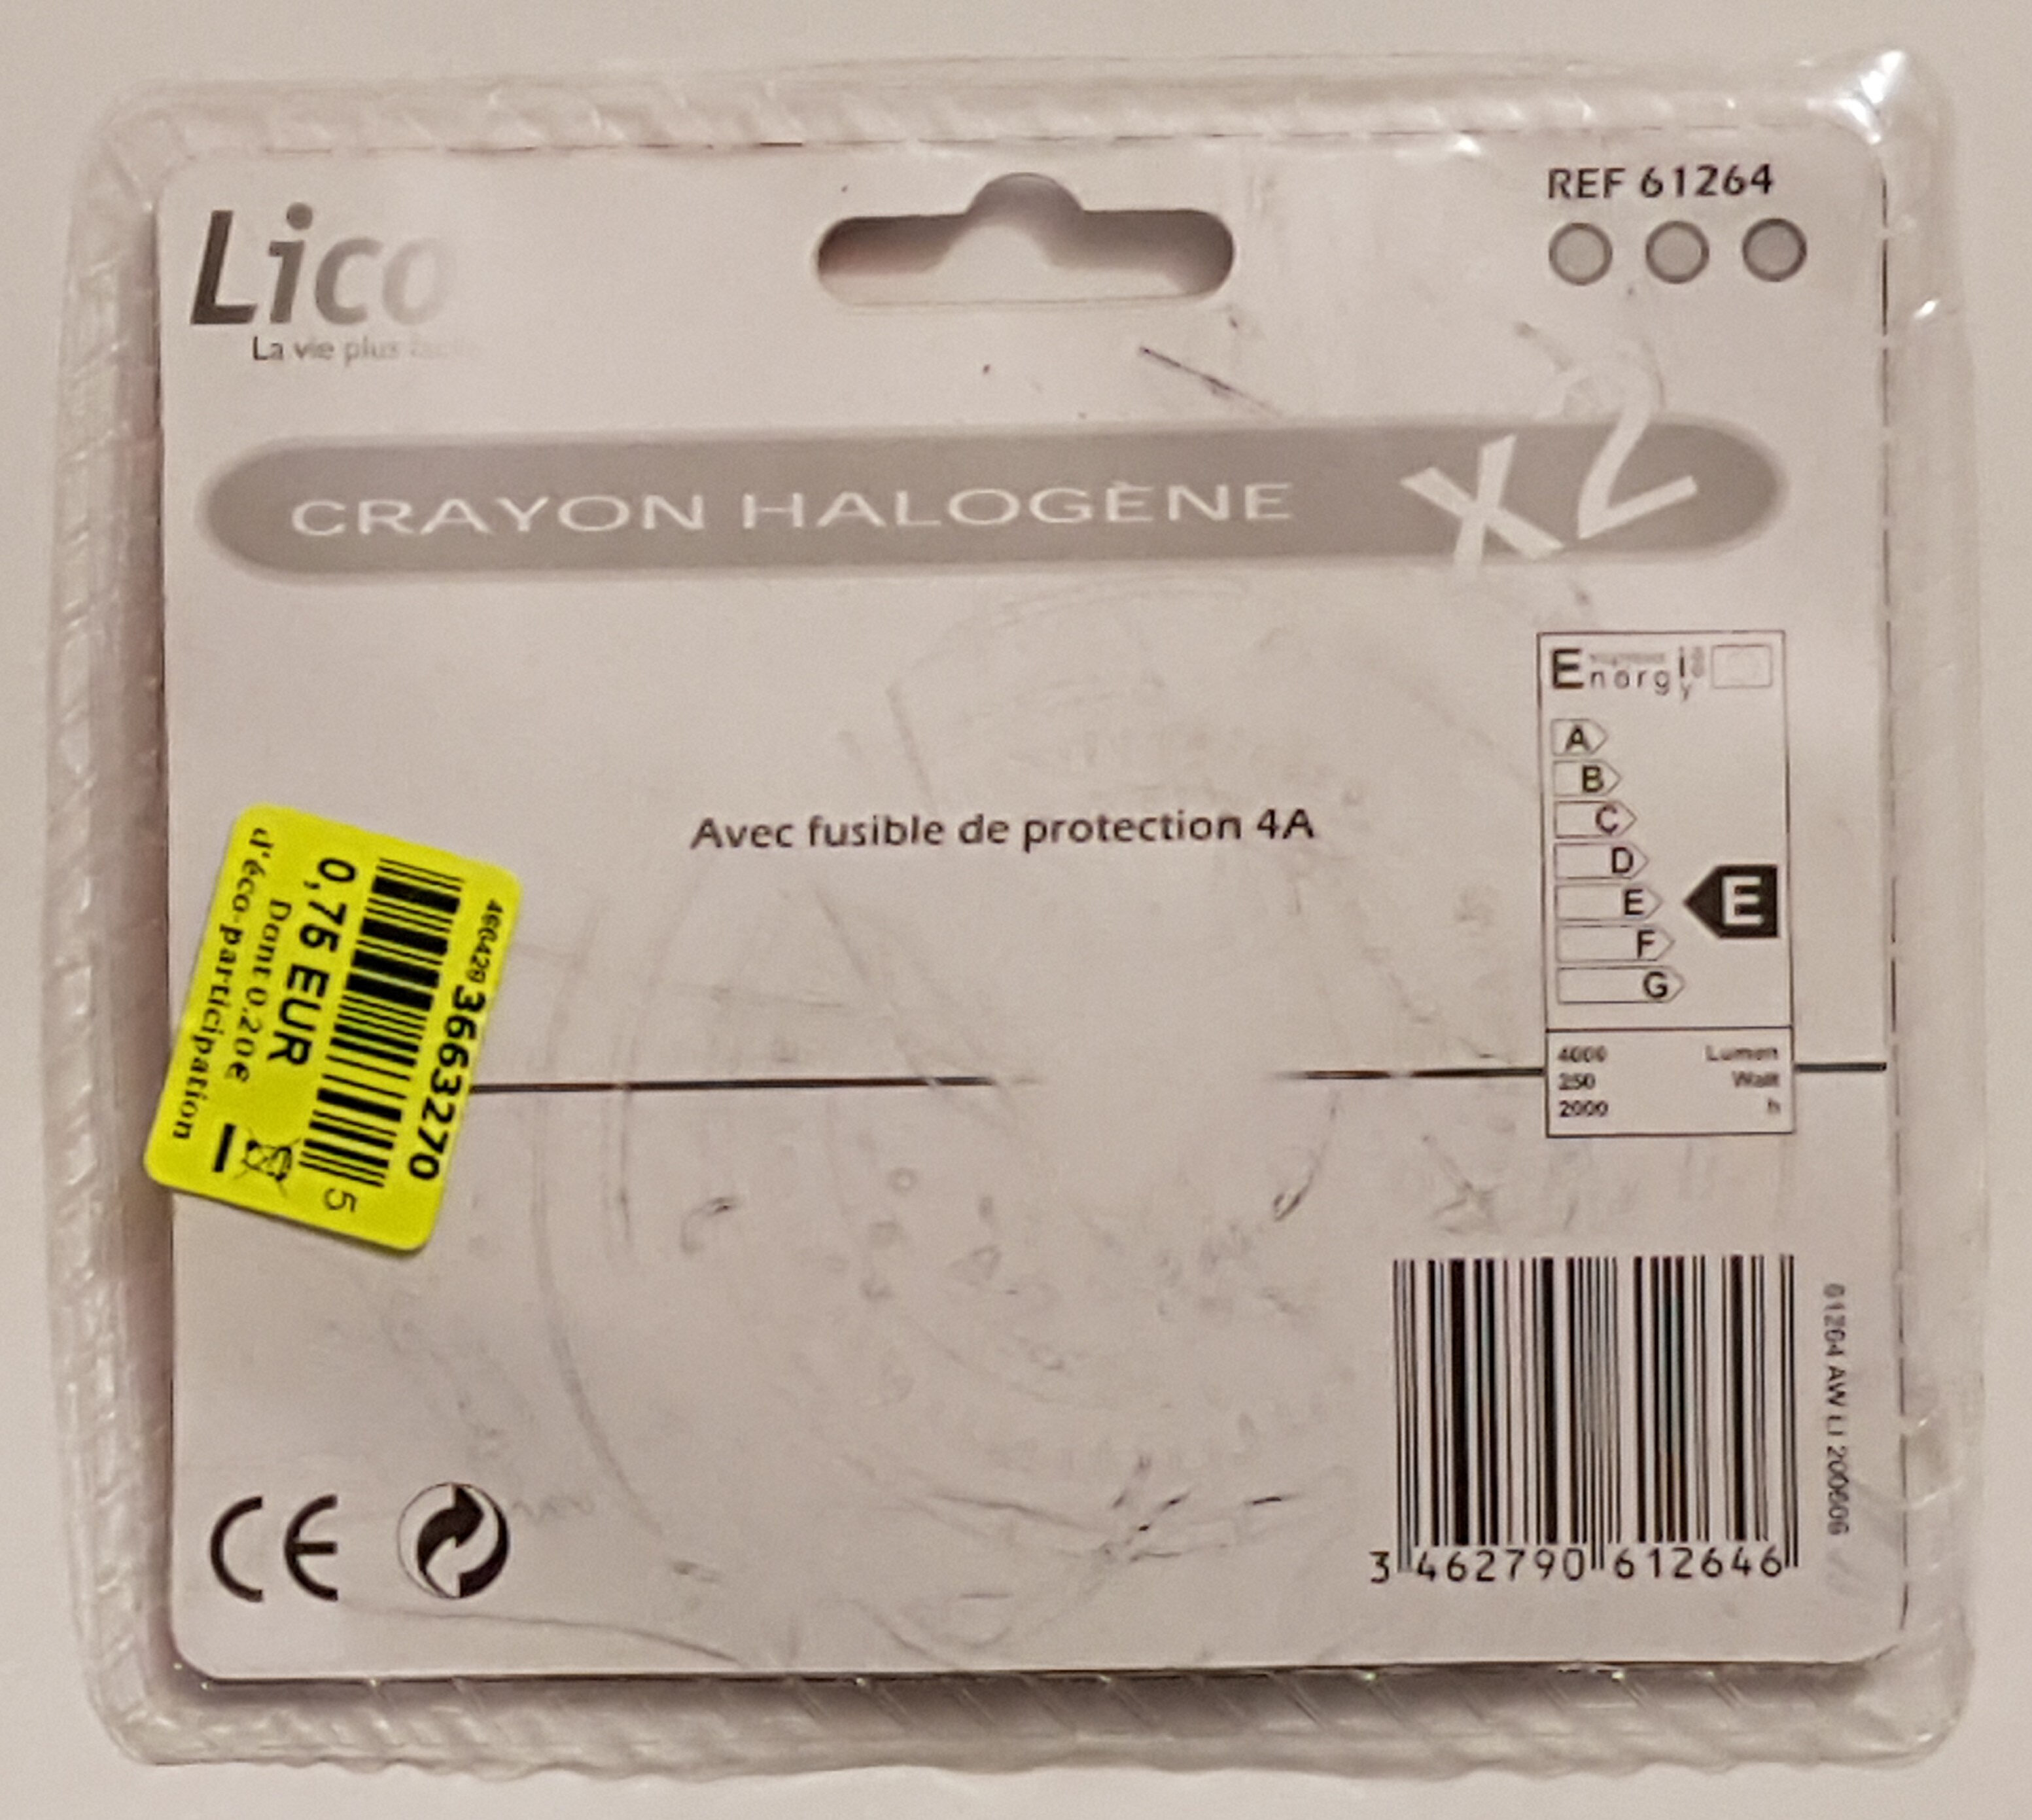 Crayon Halogène - Product - en